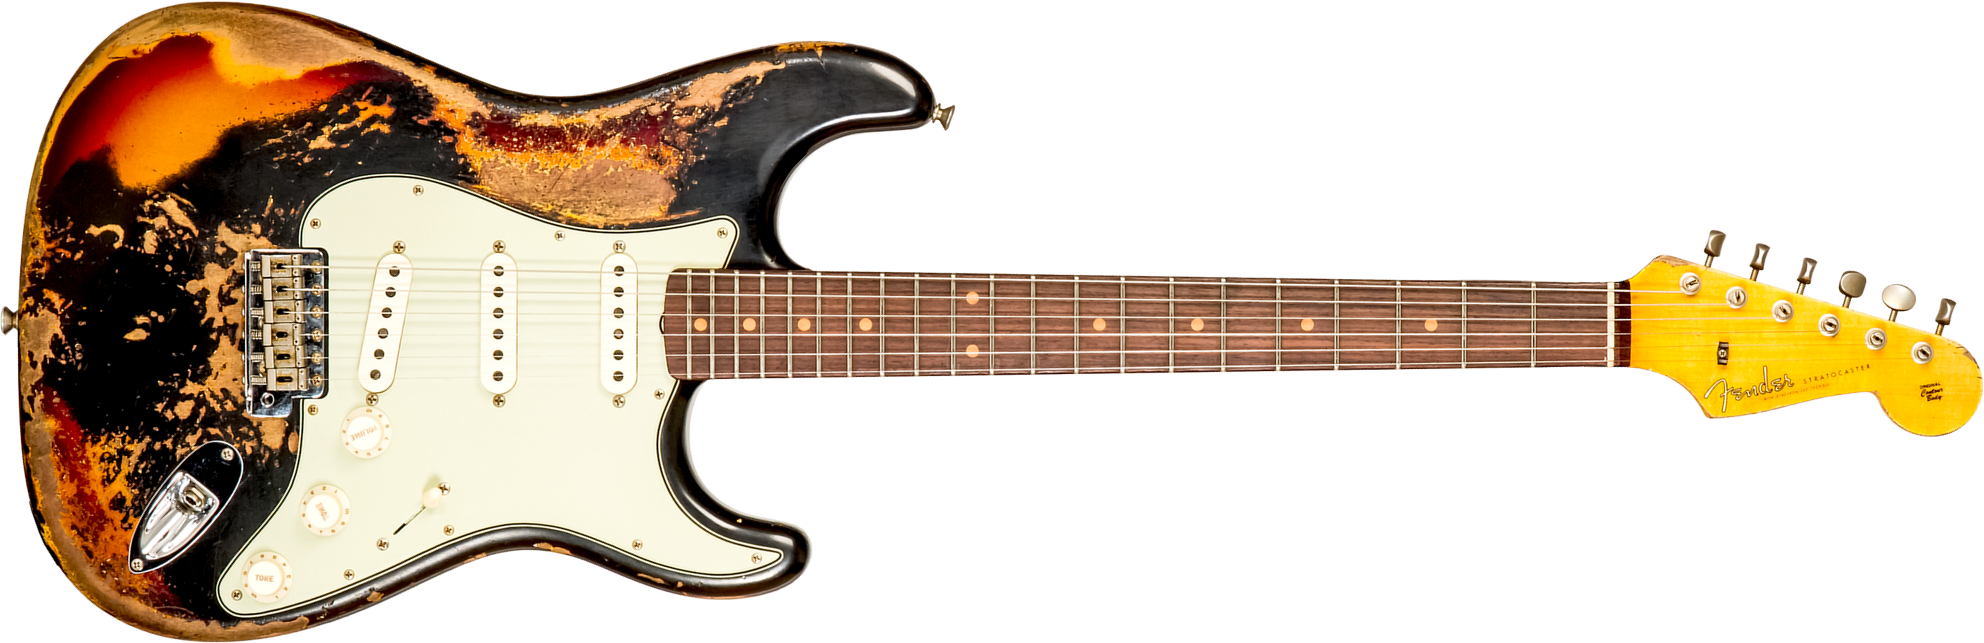 Fender Custom Shop Strat 1959 3s Trem Rw #cz576154 - Super Heavy Relic Black O. 3-color Sunburst - Guitare Électrique Forme Str - Main picture